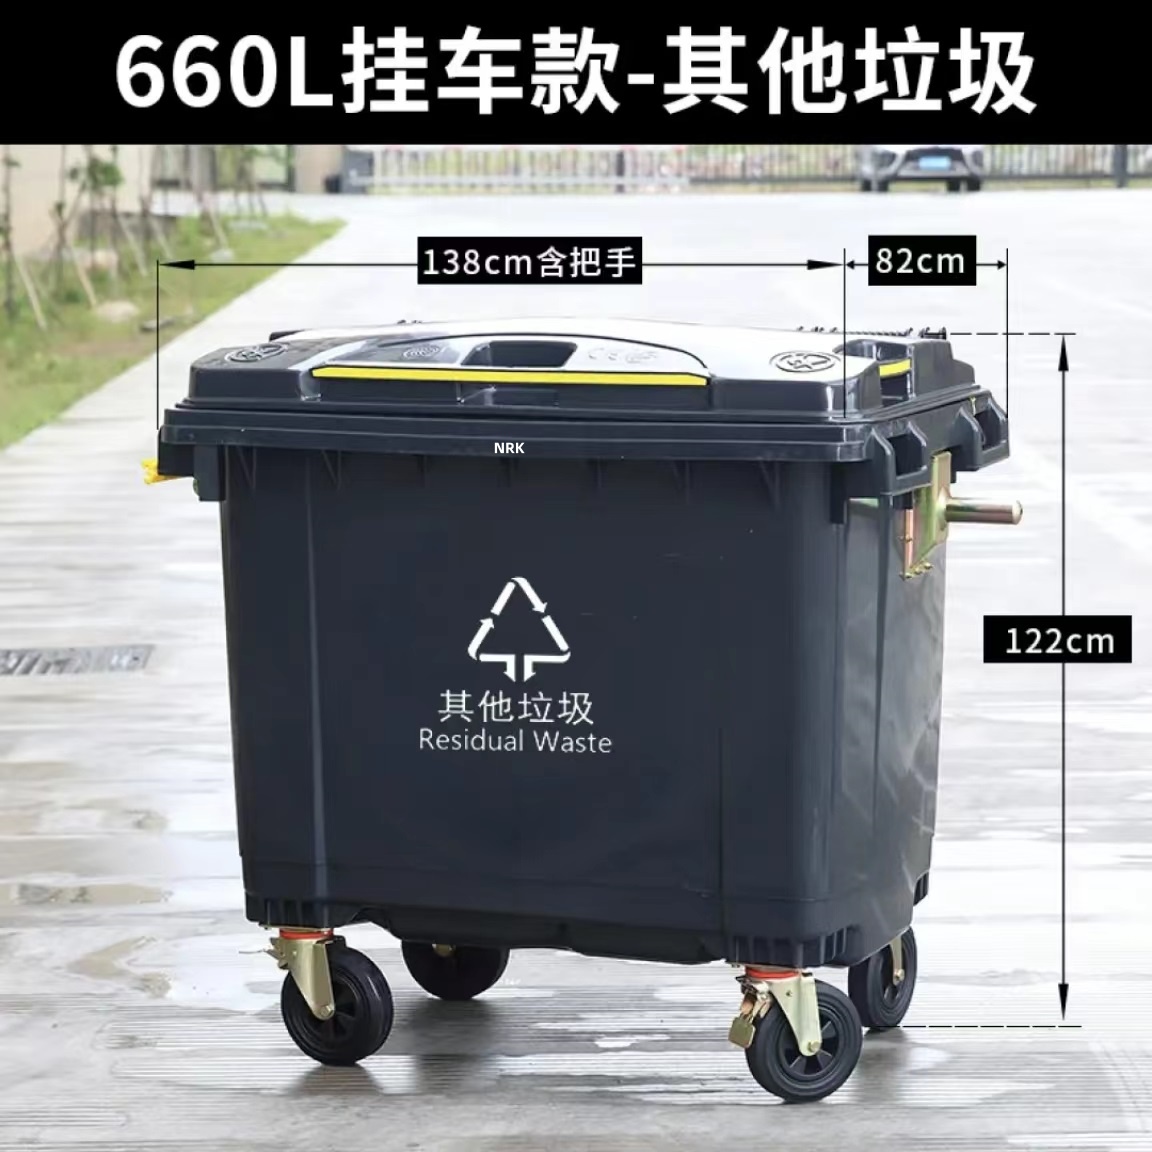 四川660L塑料垃圾桶廠家